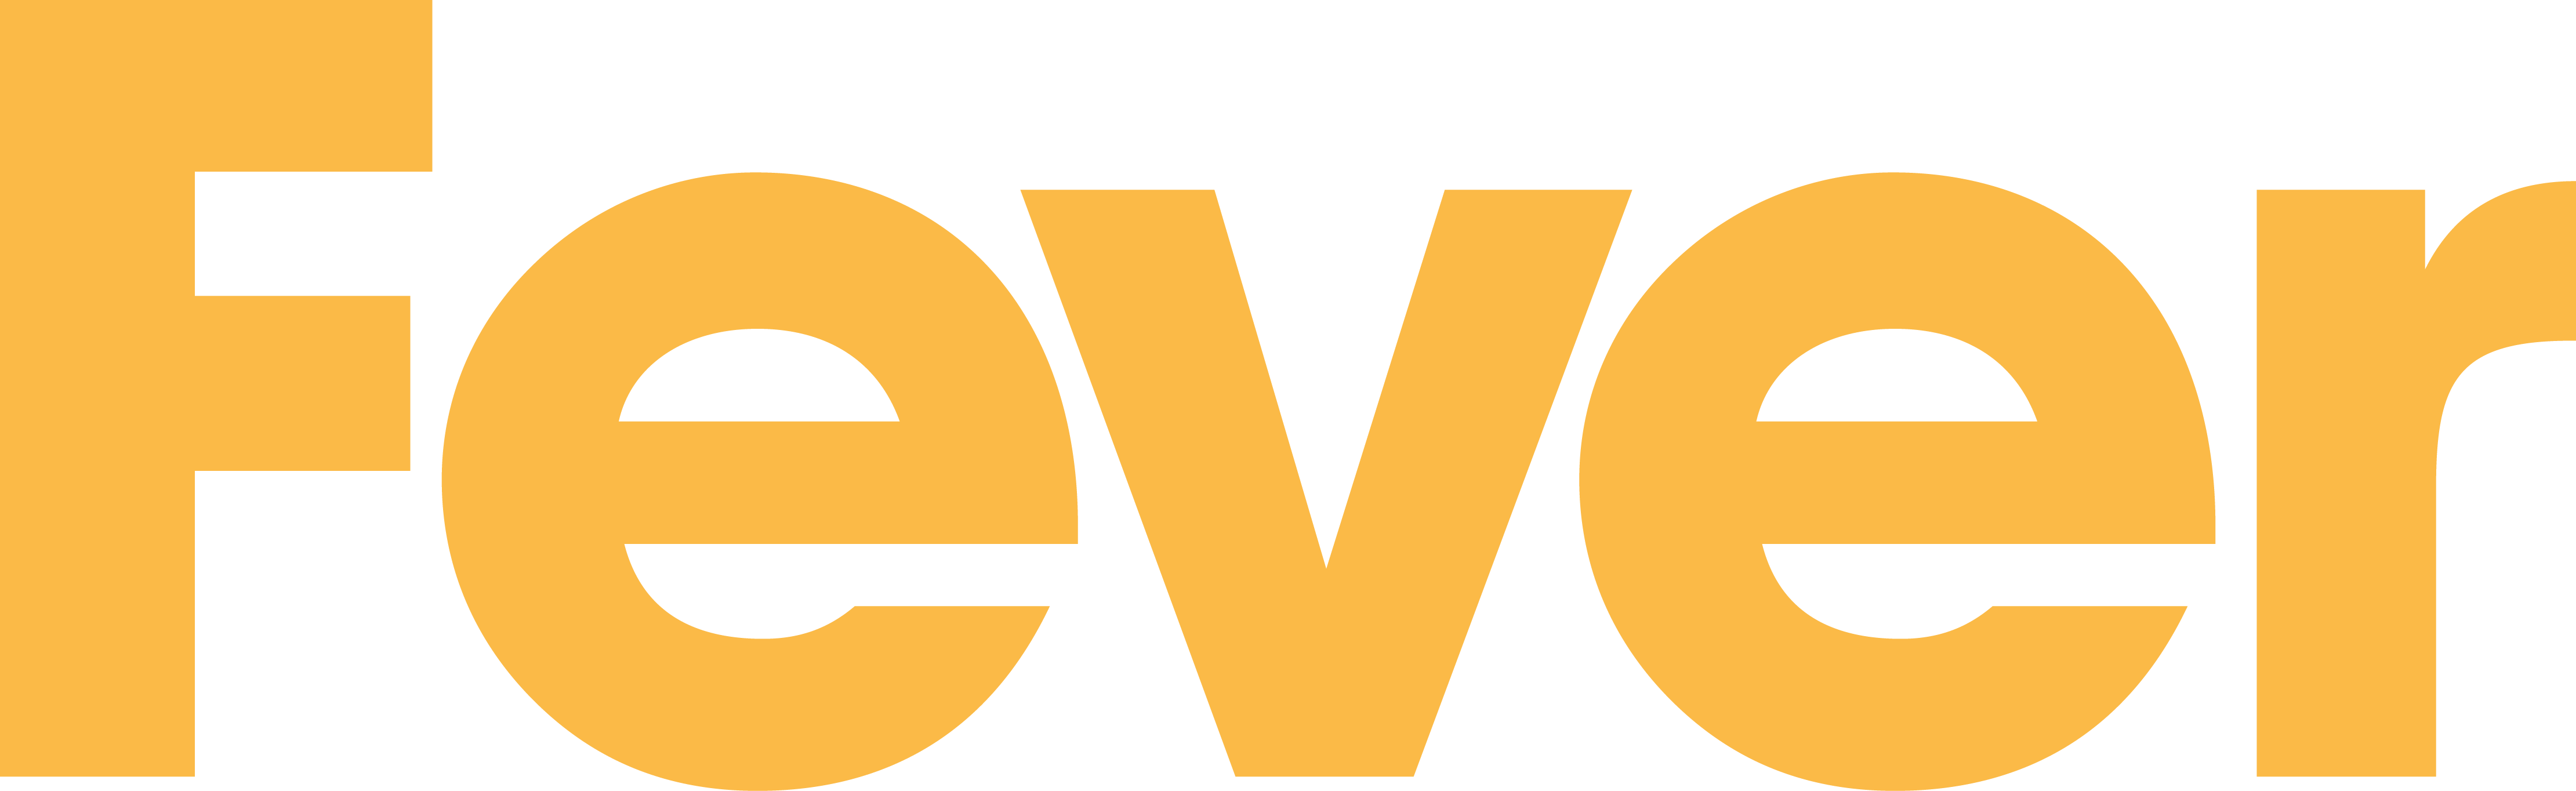 Fever Logo - FeverPR